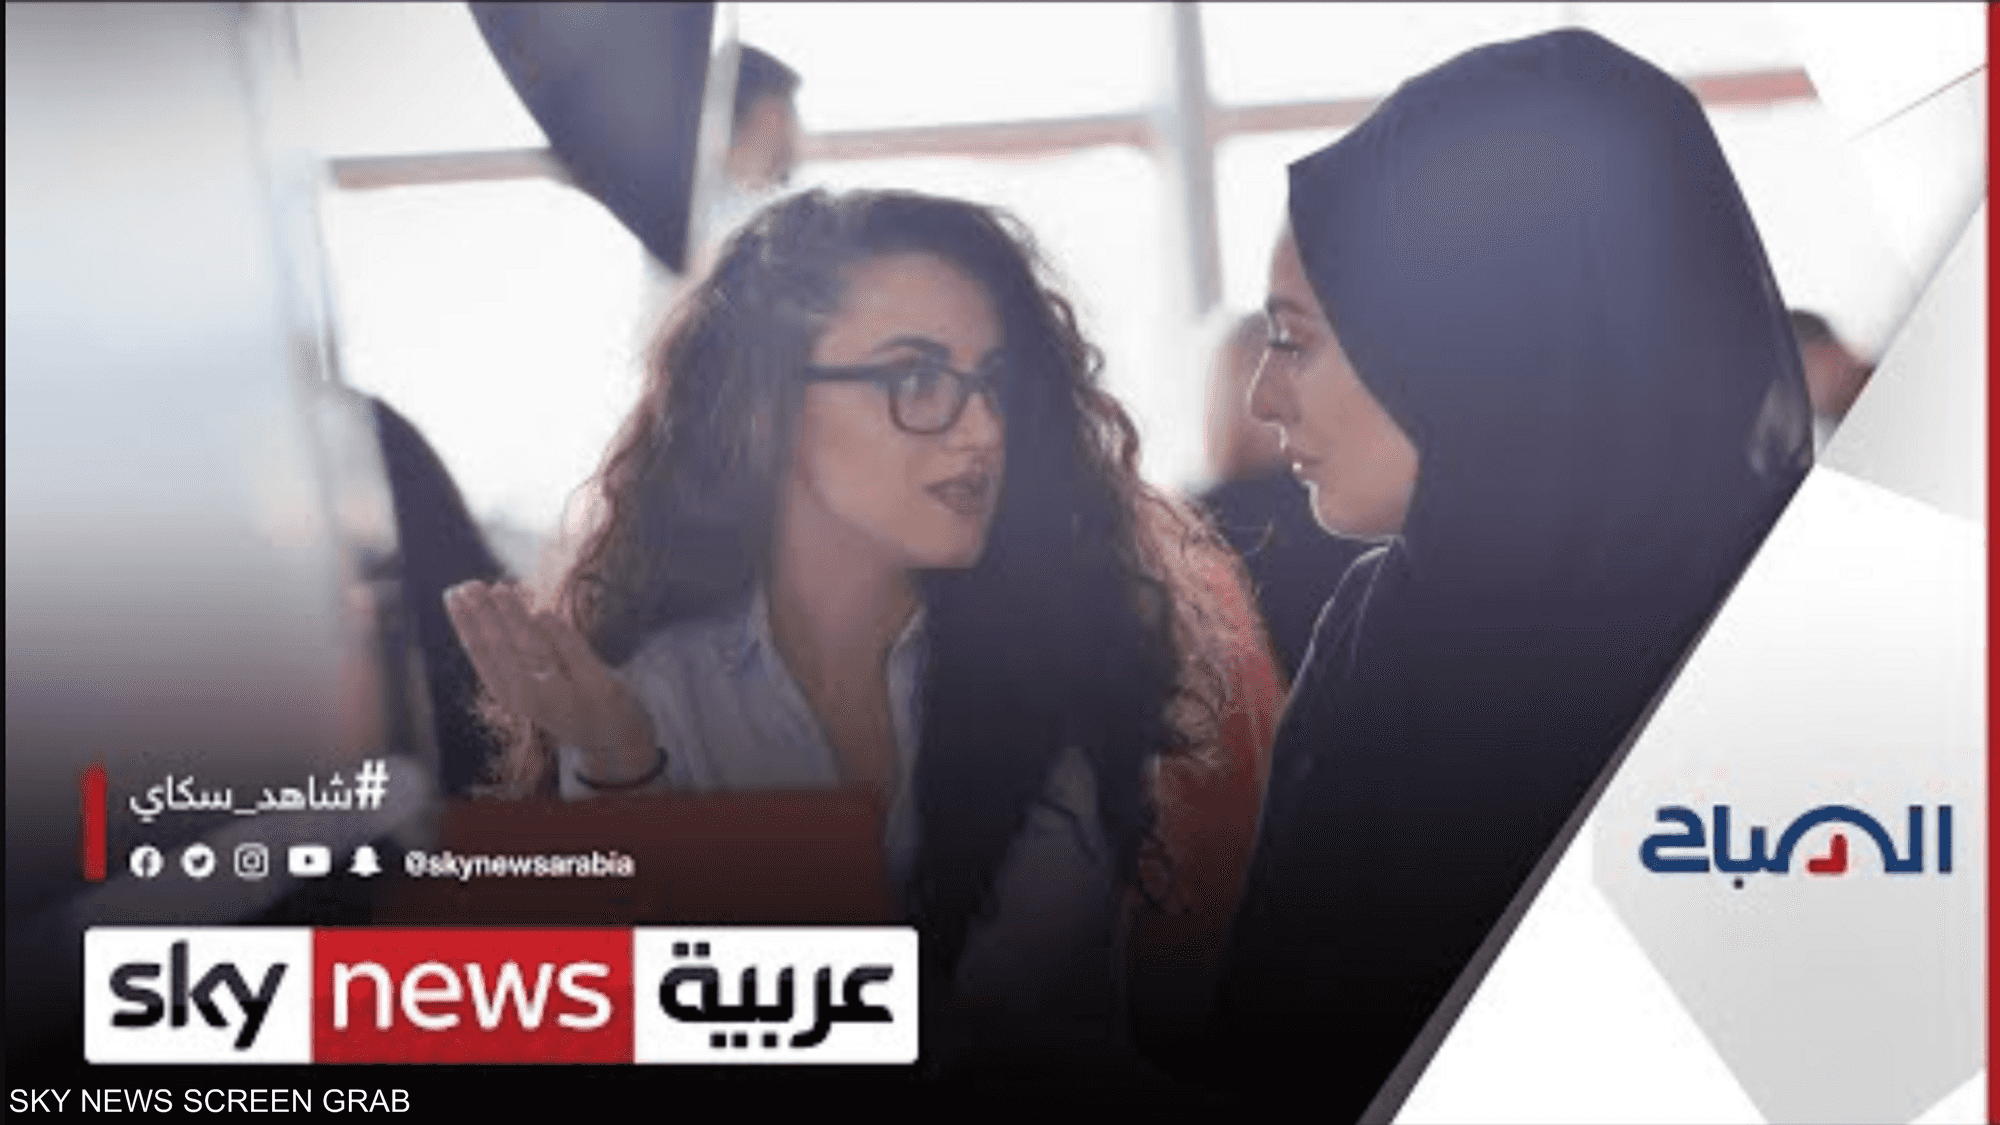 ما تداعيات الأزمات على النساء والفتيات في الدول العربية؟